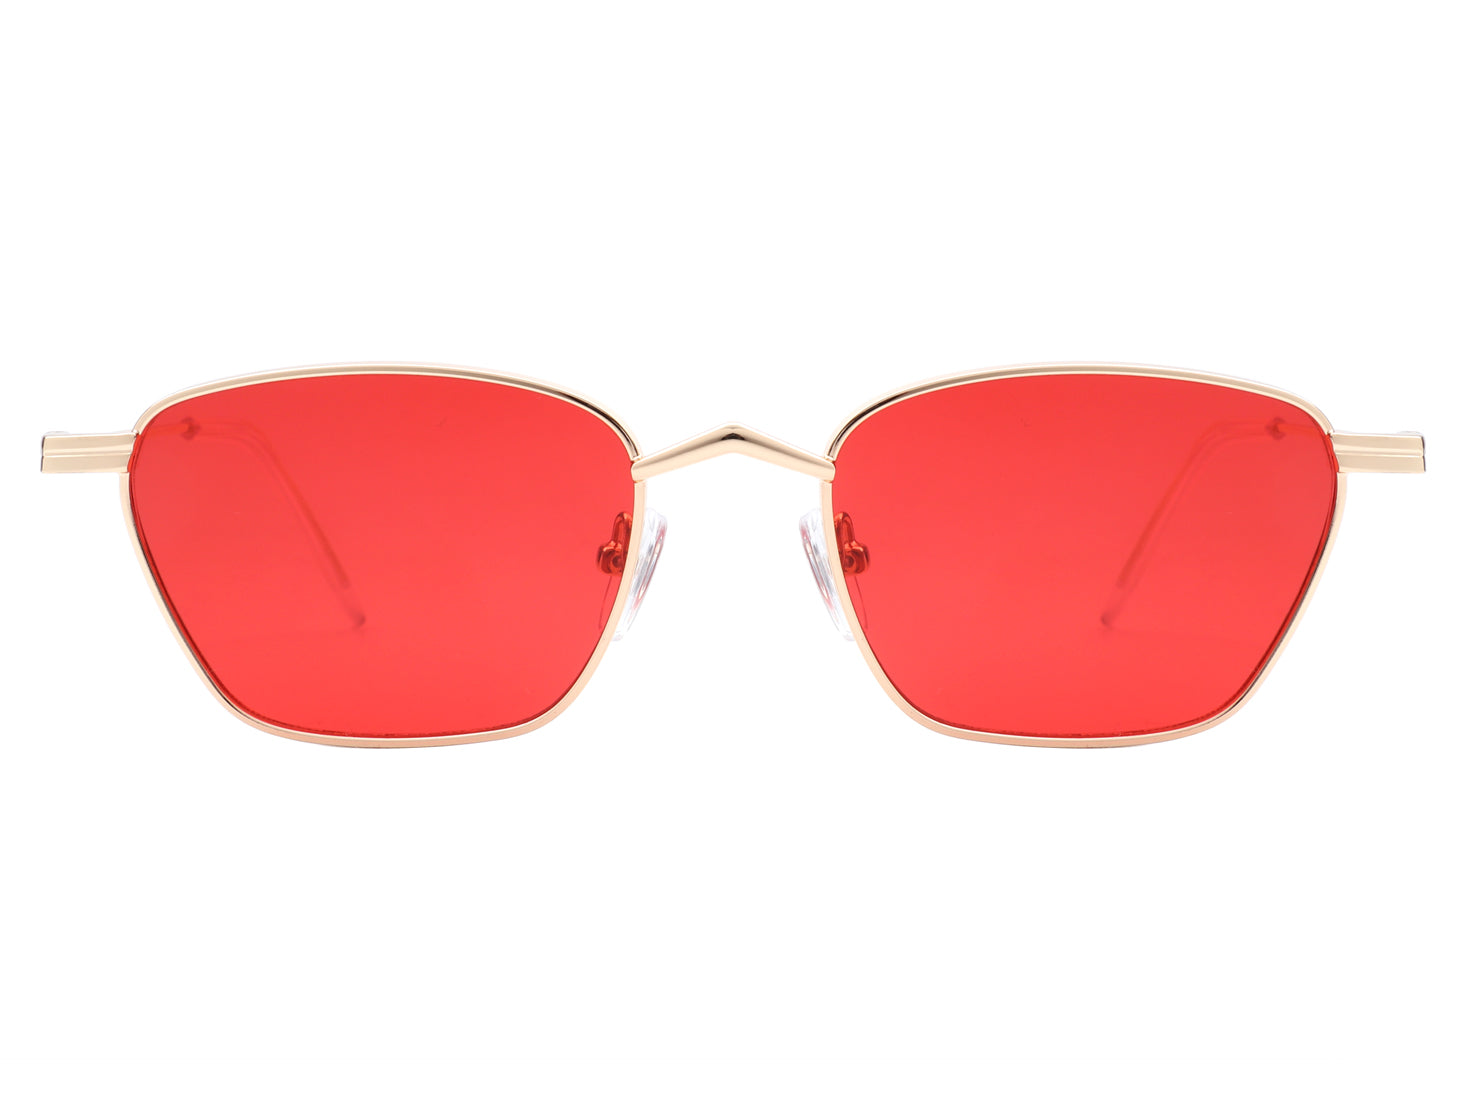 Square Sunglasses, acetate & calfskin — Fashion